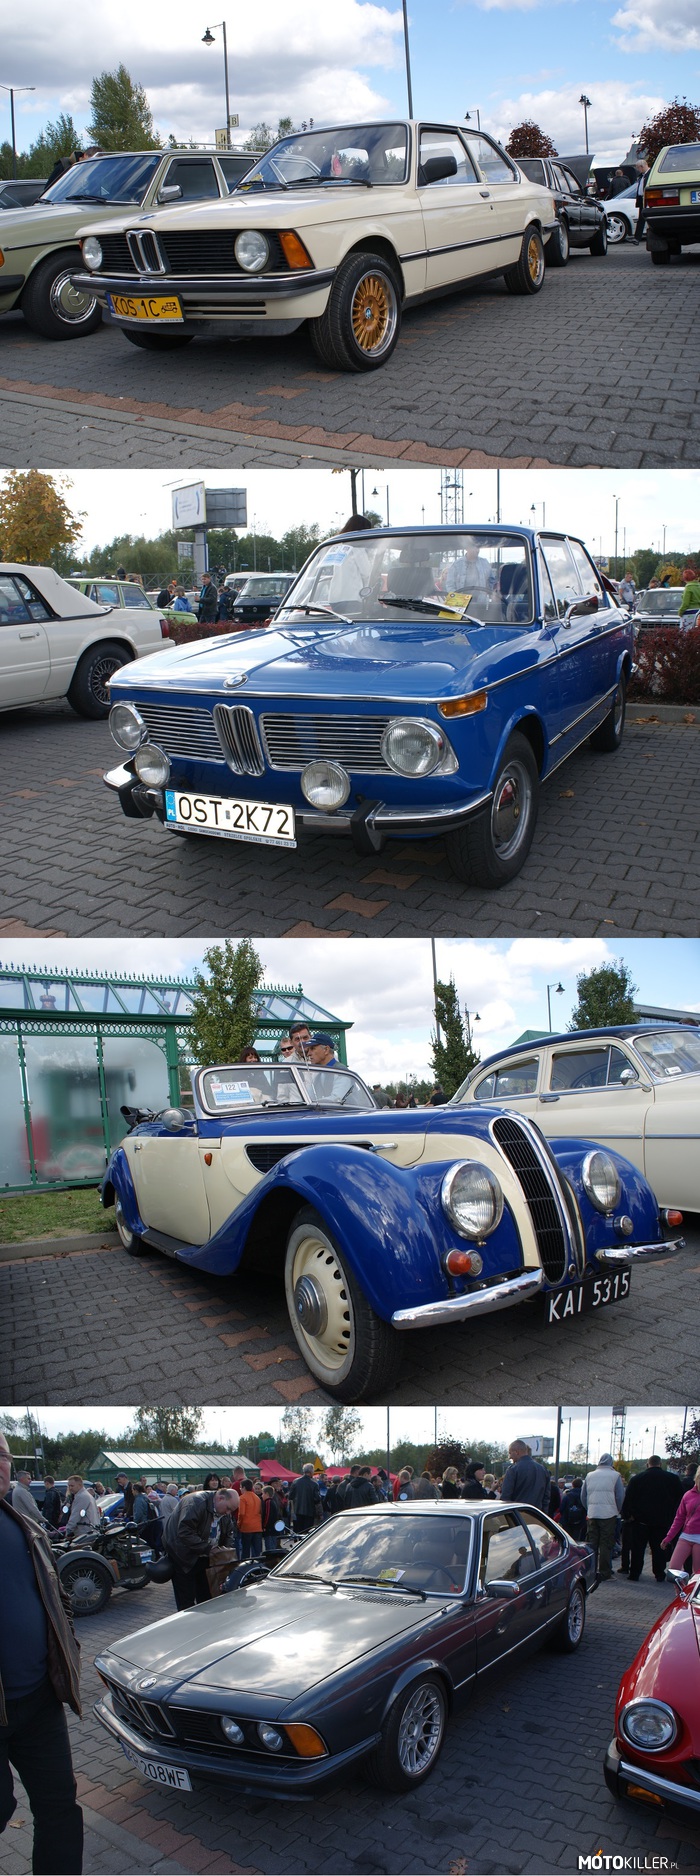 Coś dla fanów BMW – Kilka zdjęć BMW spotkanych podczas zlotu starych samochodów w Sosnowcu. 